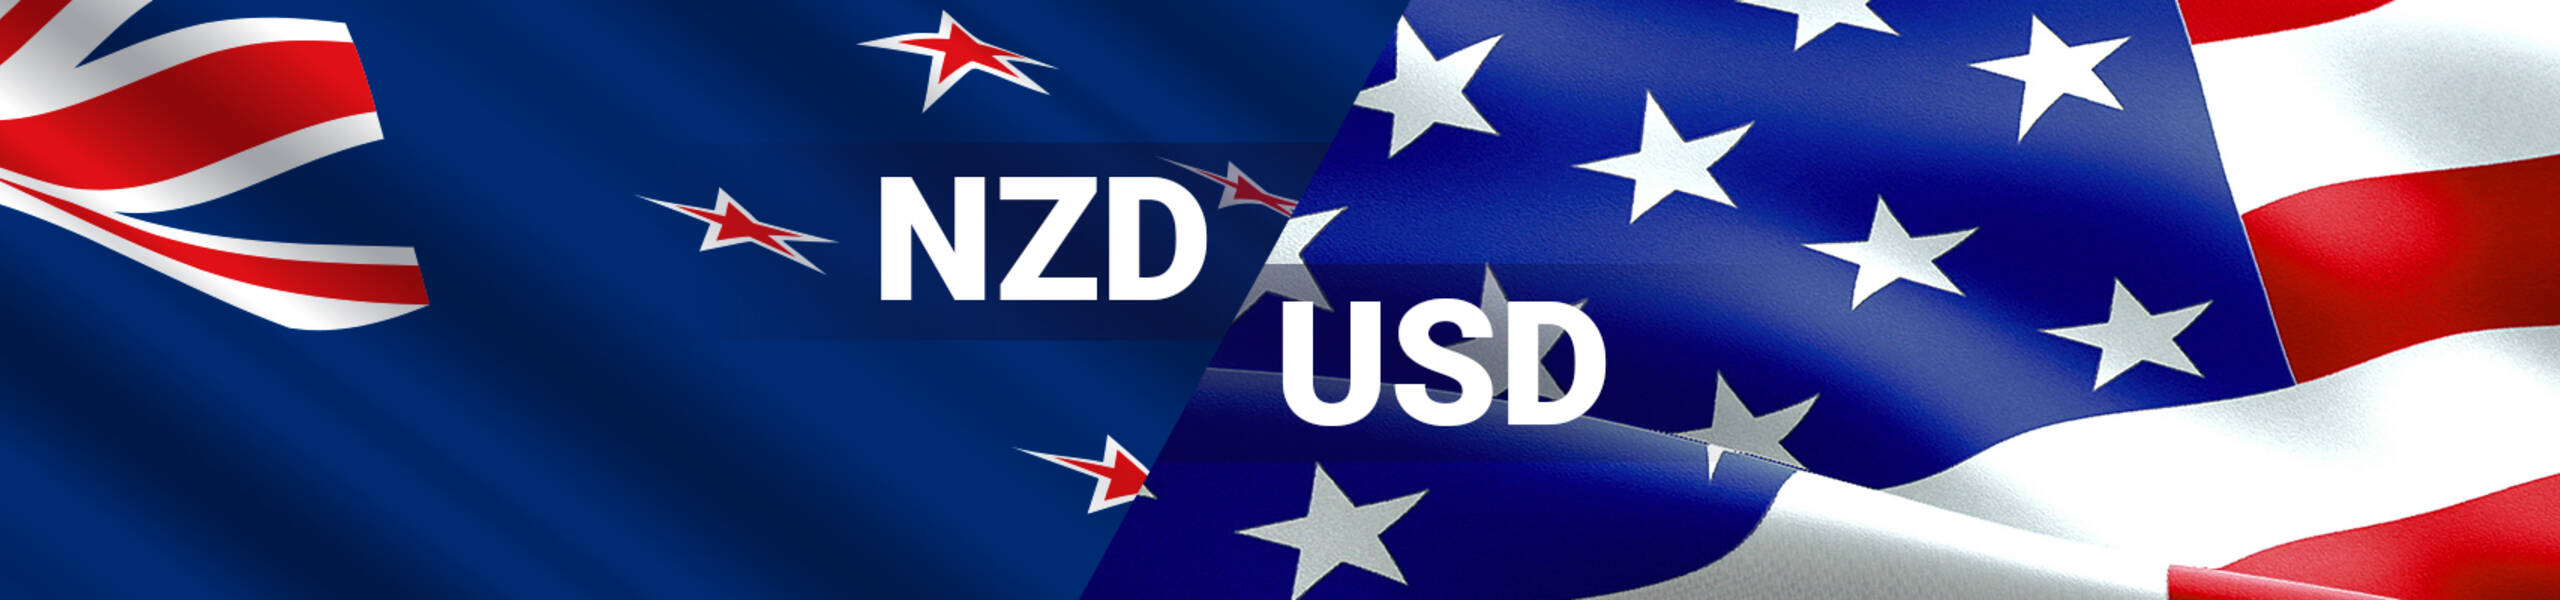 NZD/USD esperando por completar la corrección bajista en 0.6928